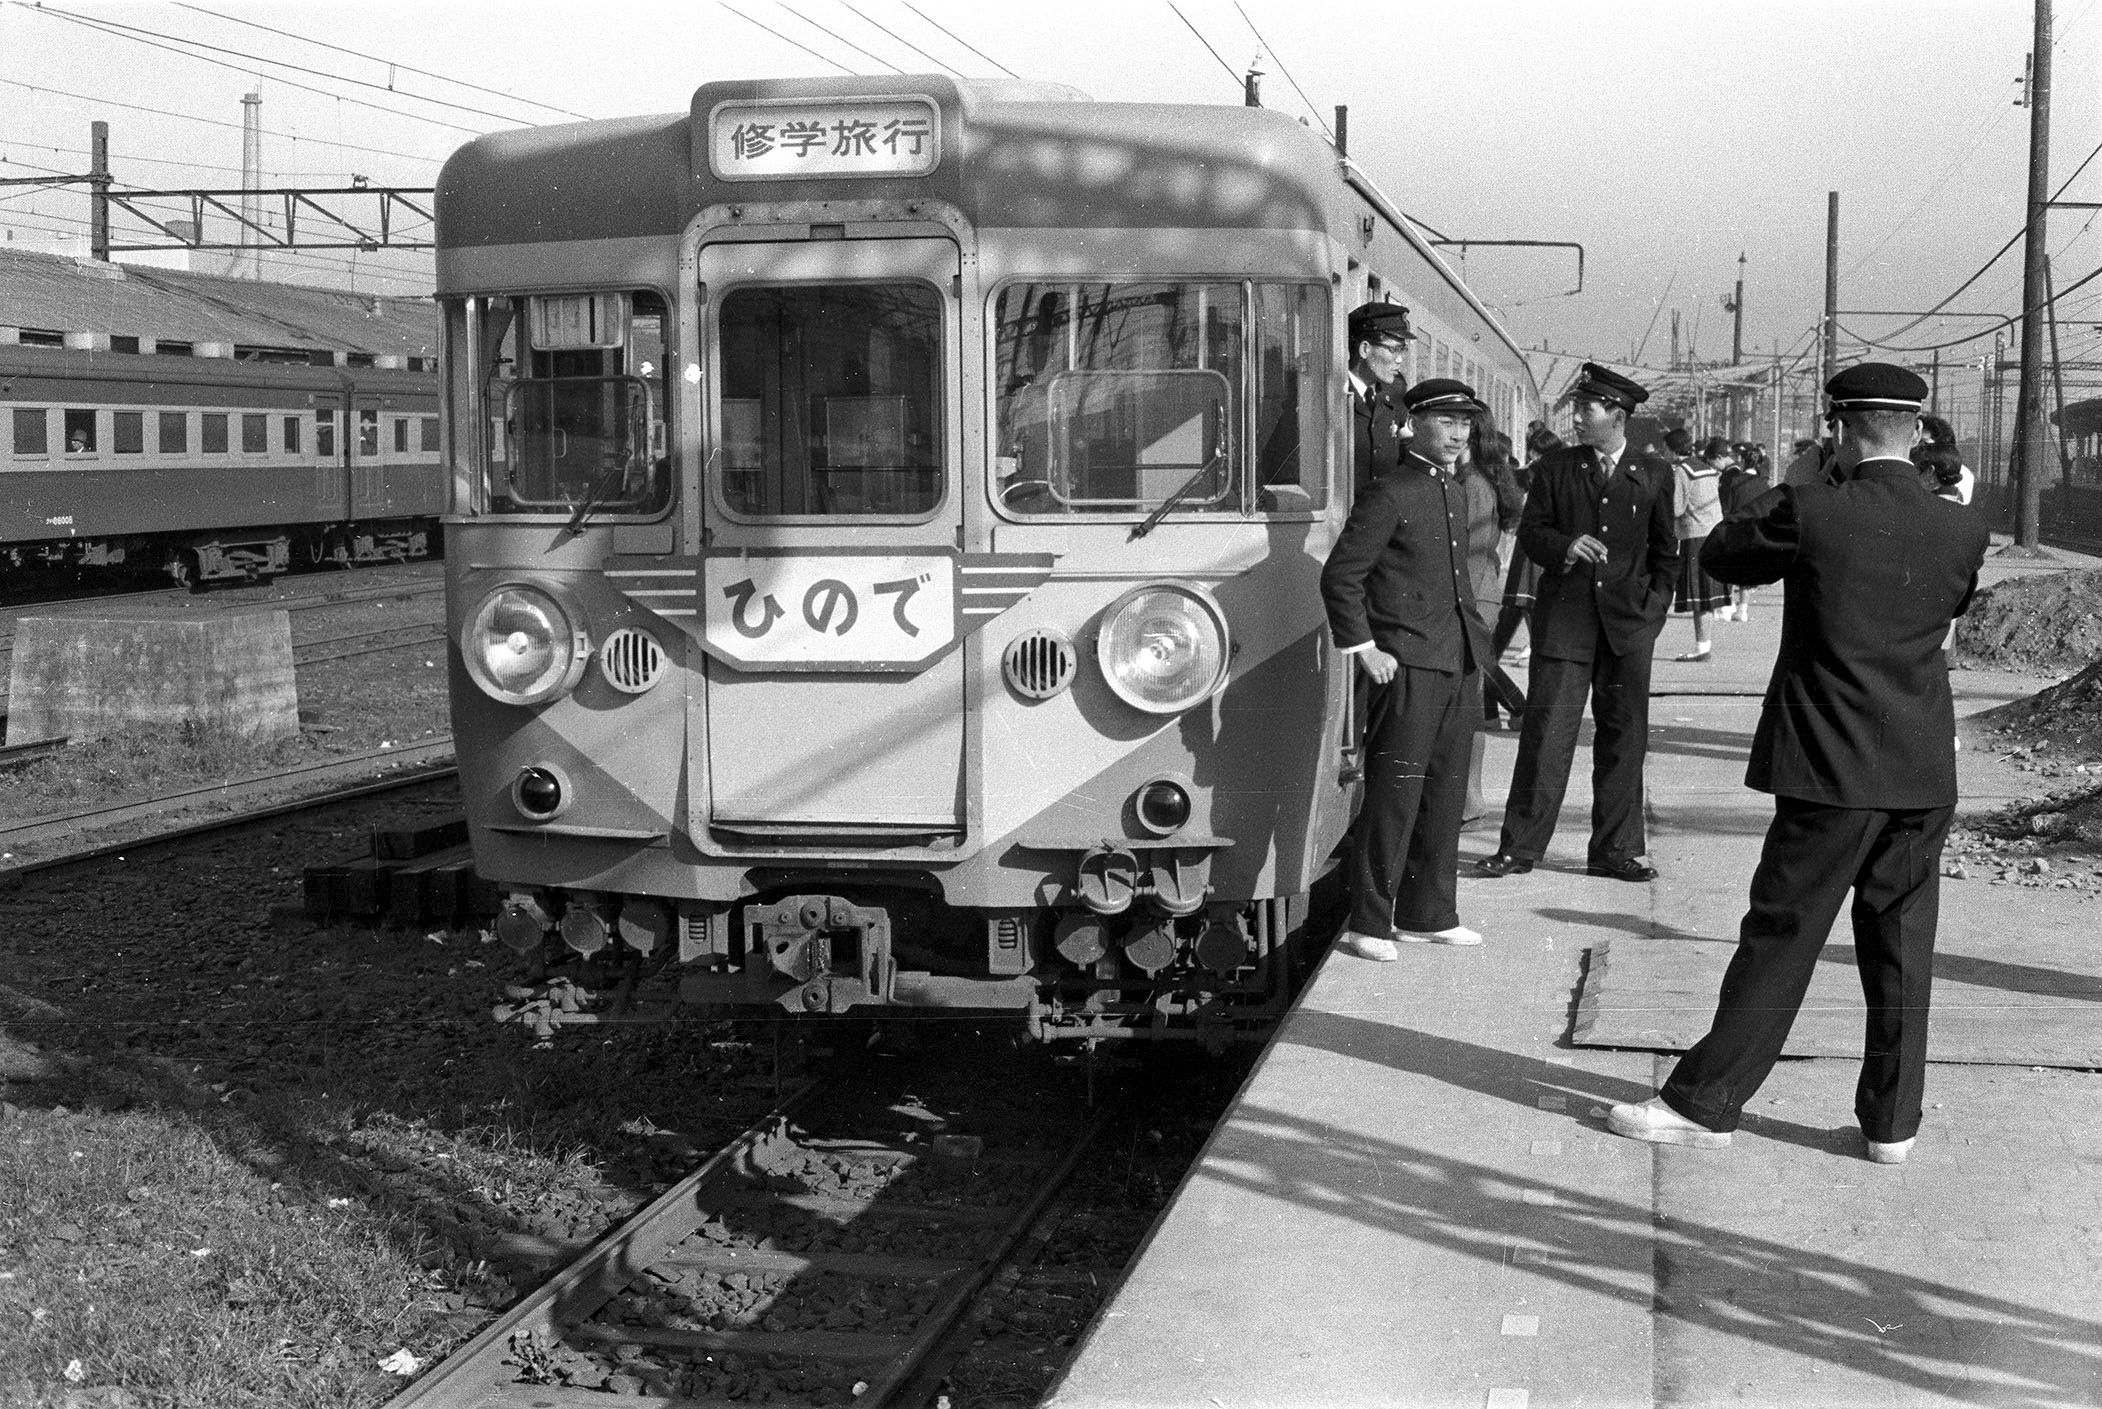 昭和―平成を走った特別列車の写真など展示 さいたまの鉄道博物館 - 産経ニュース